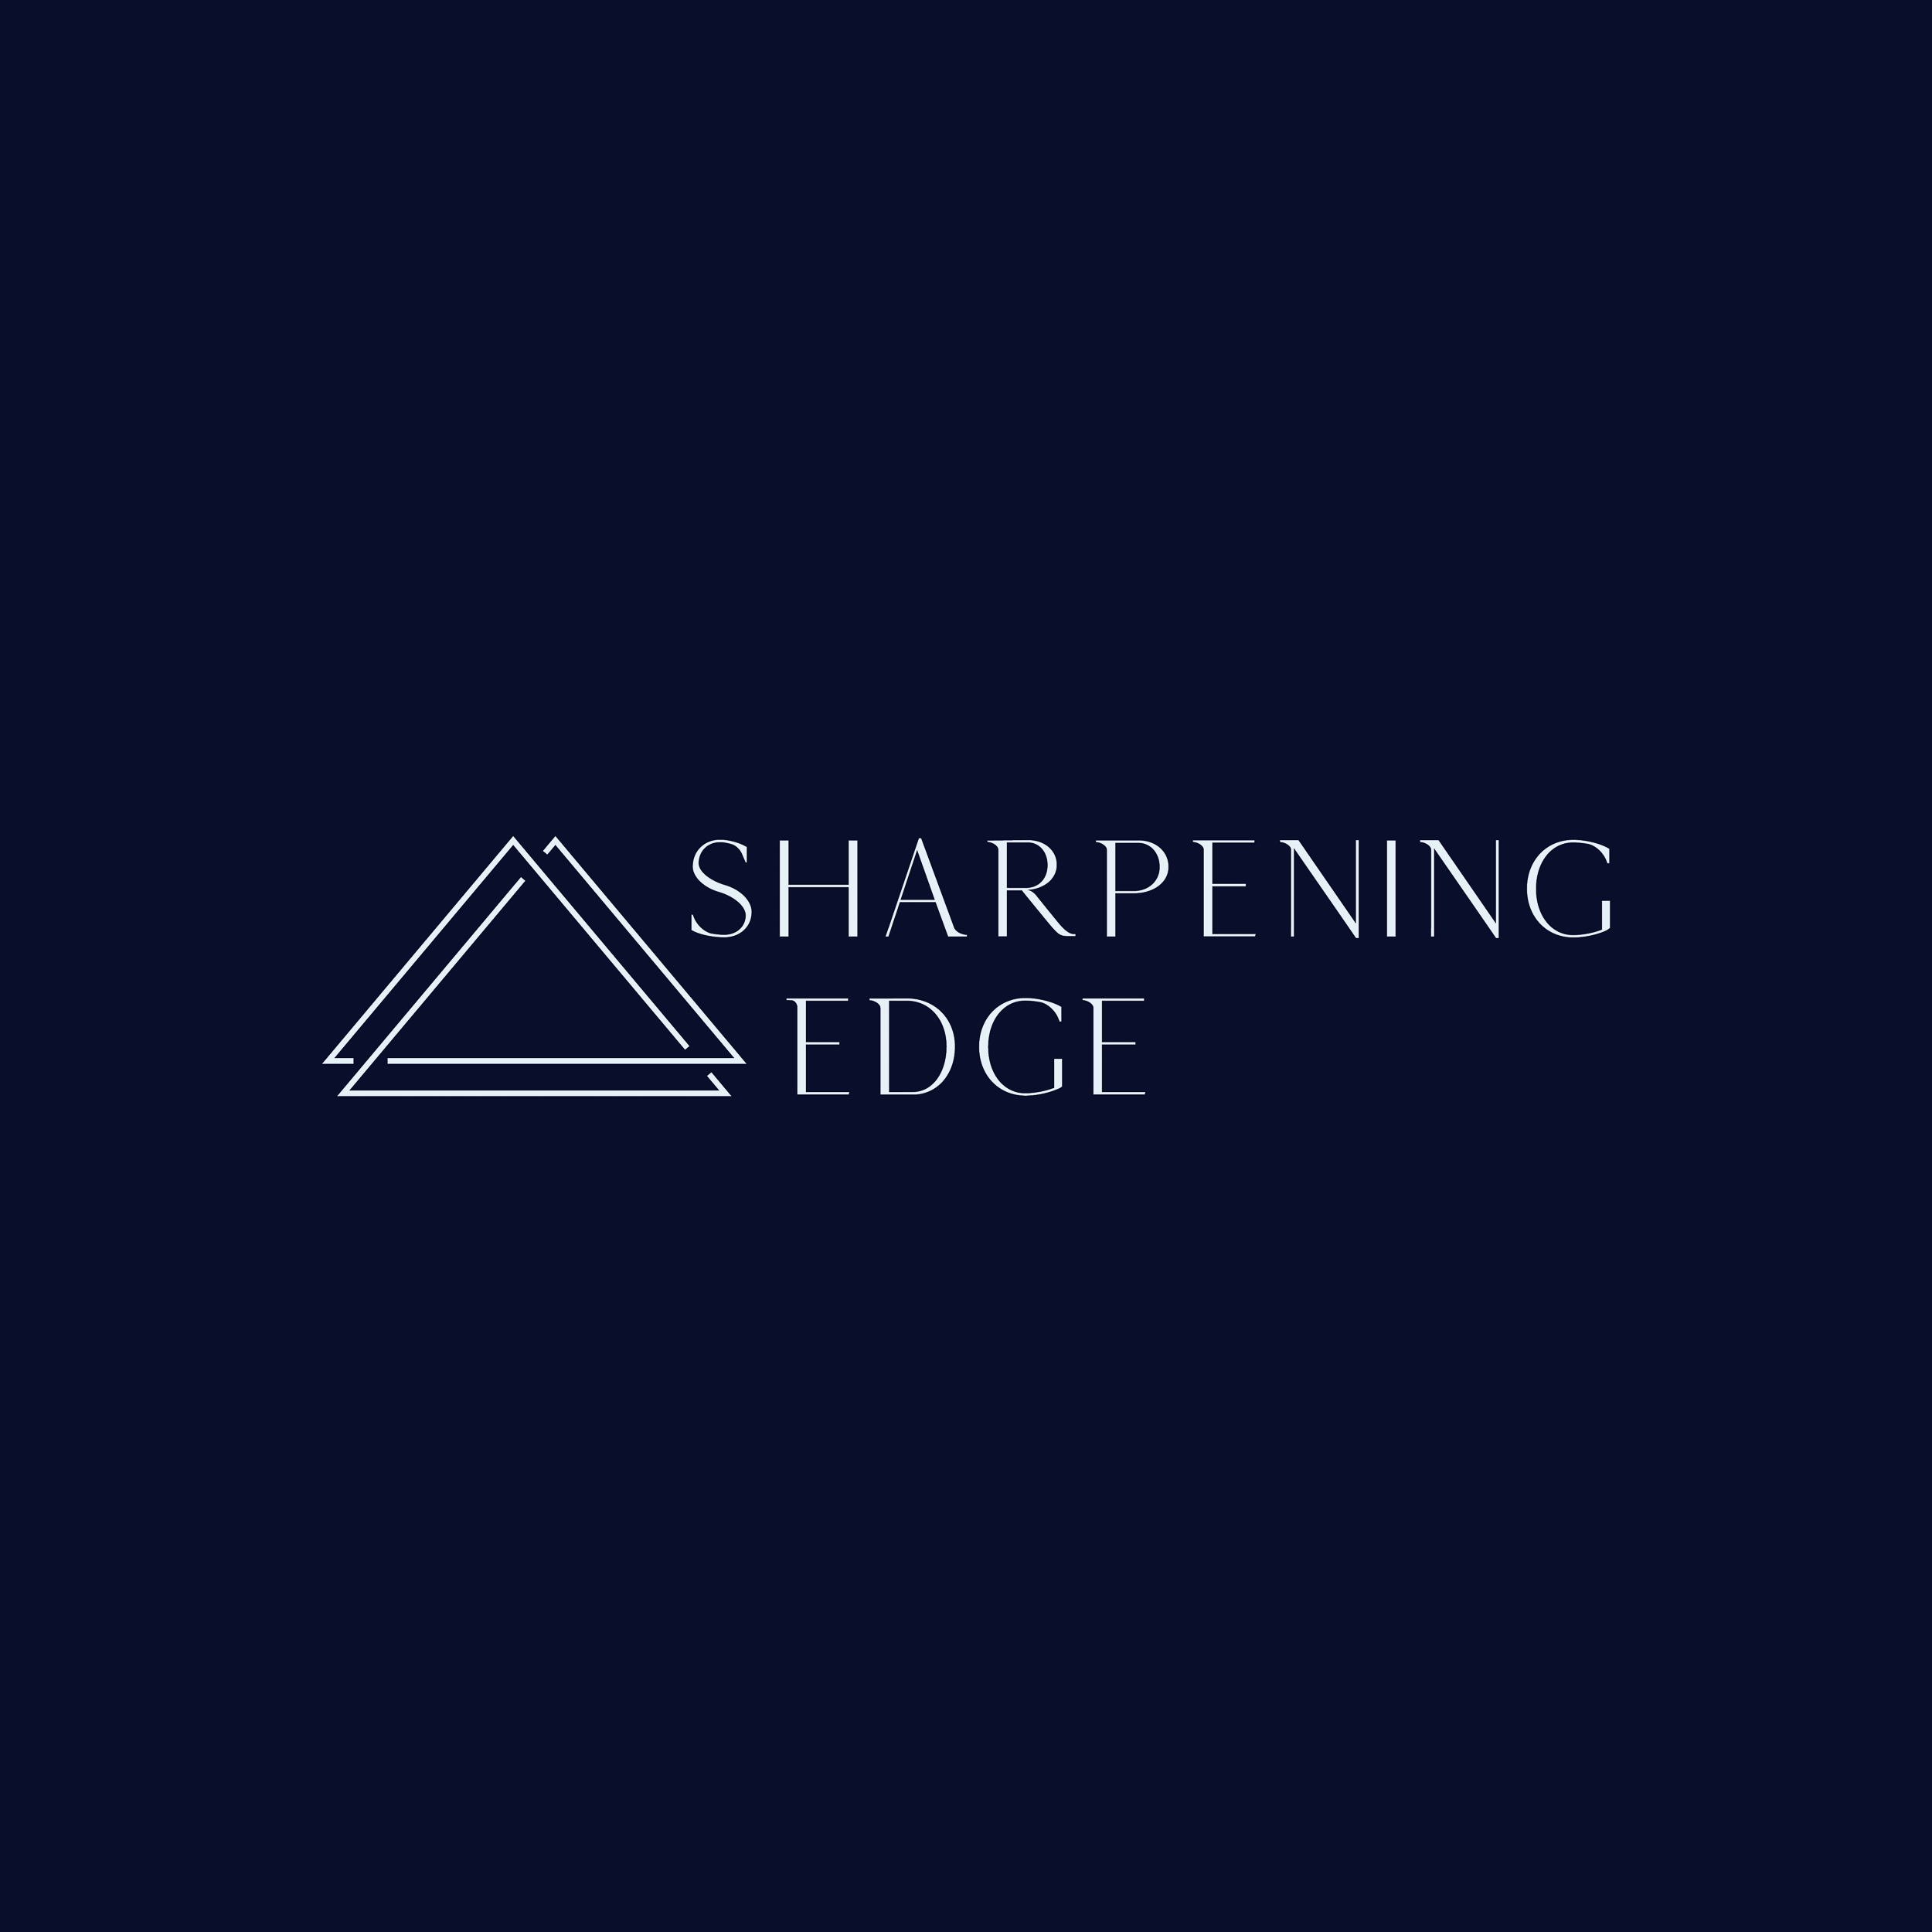 Das Logo von Sharpening Edge, das durch Kommunikationsdesign entstand